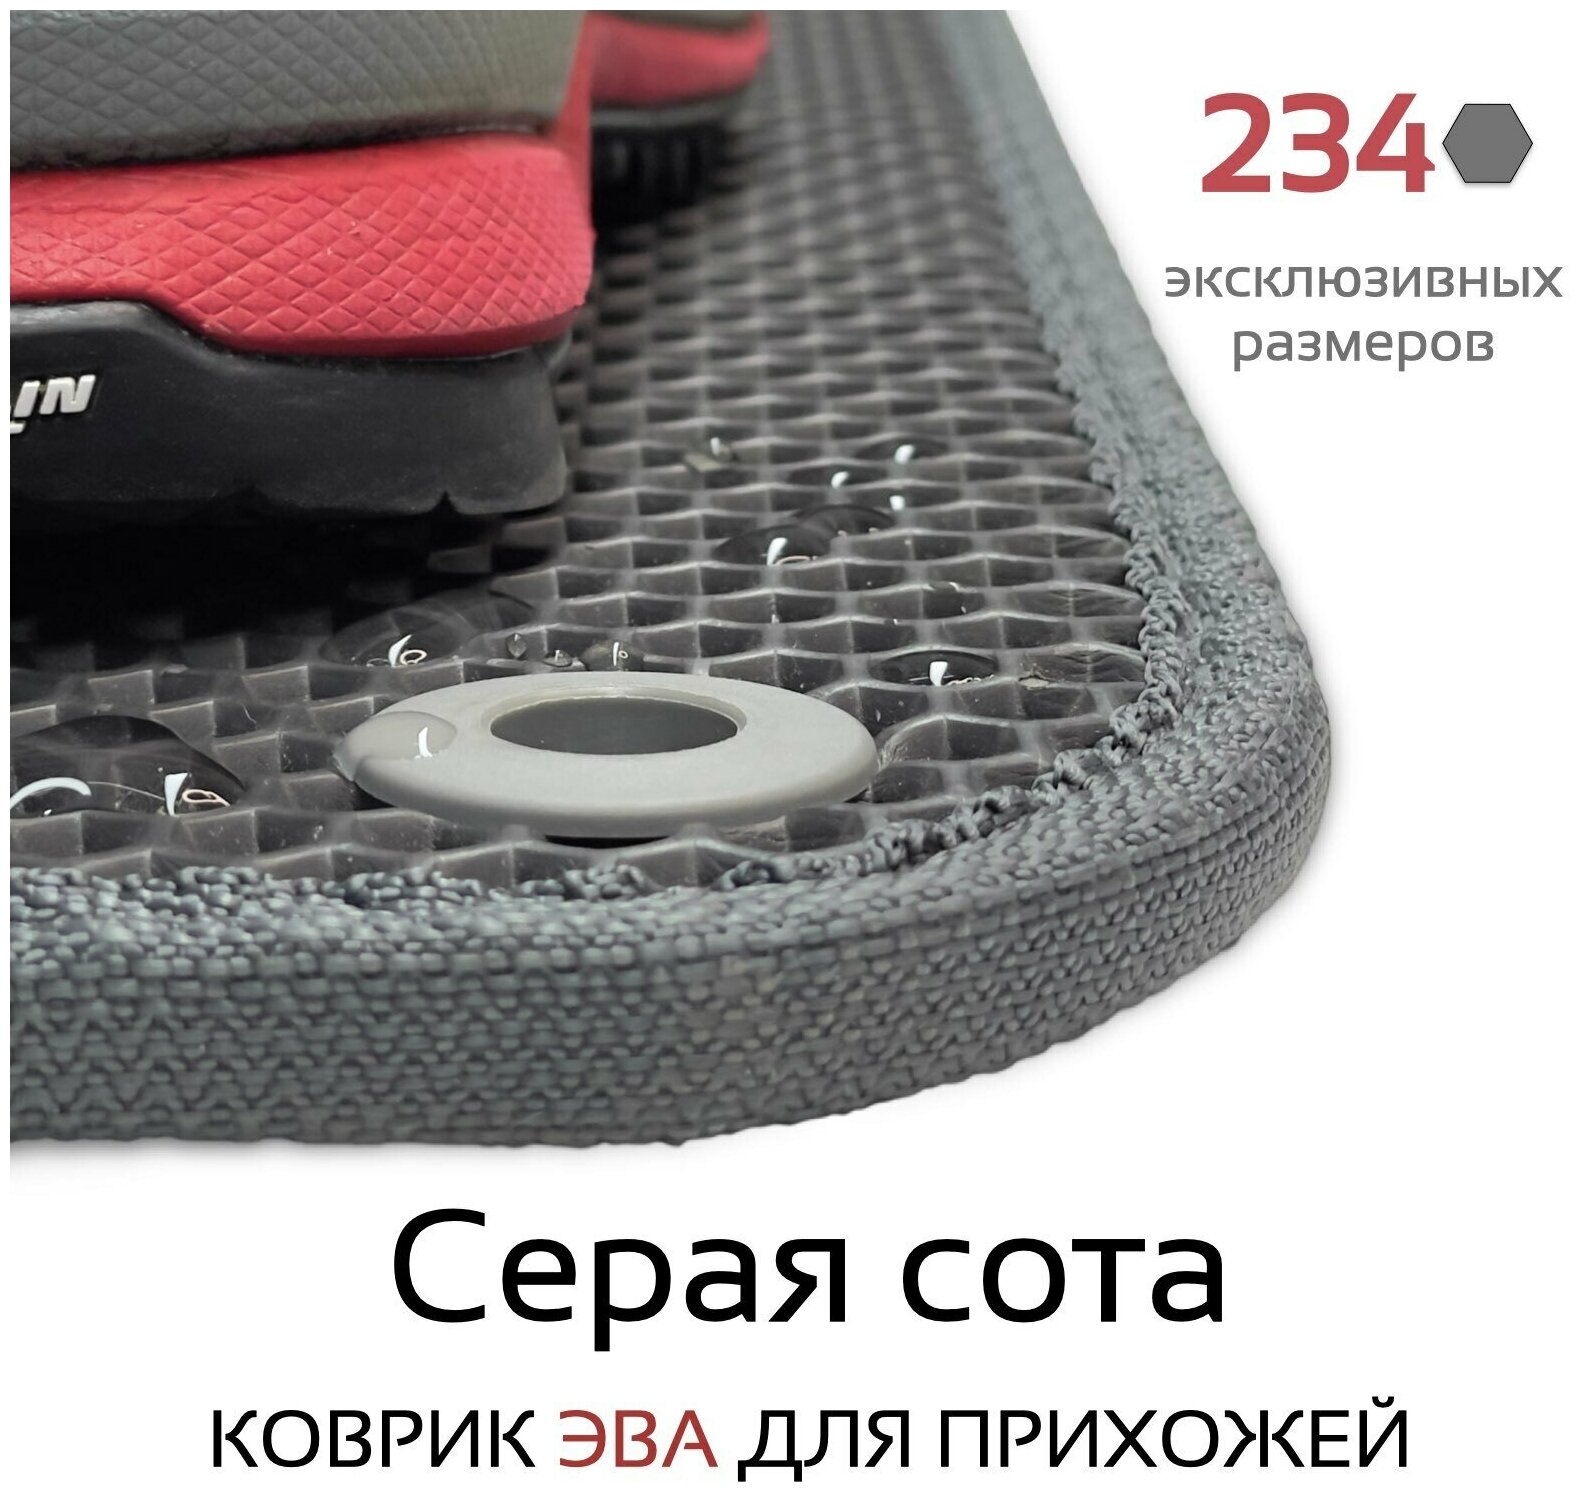 Грязезащитный придверный резиновый коврик в прихожую из EVA для обуви, для ванной, туалета, 0.35 х 0.45 м, серая сота - фотография № 3